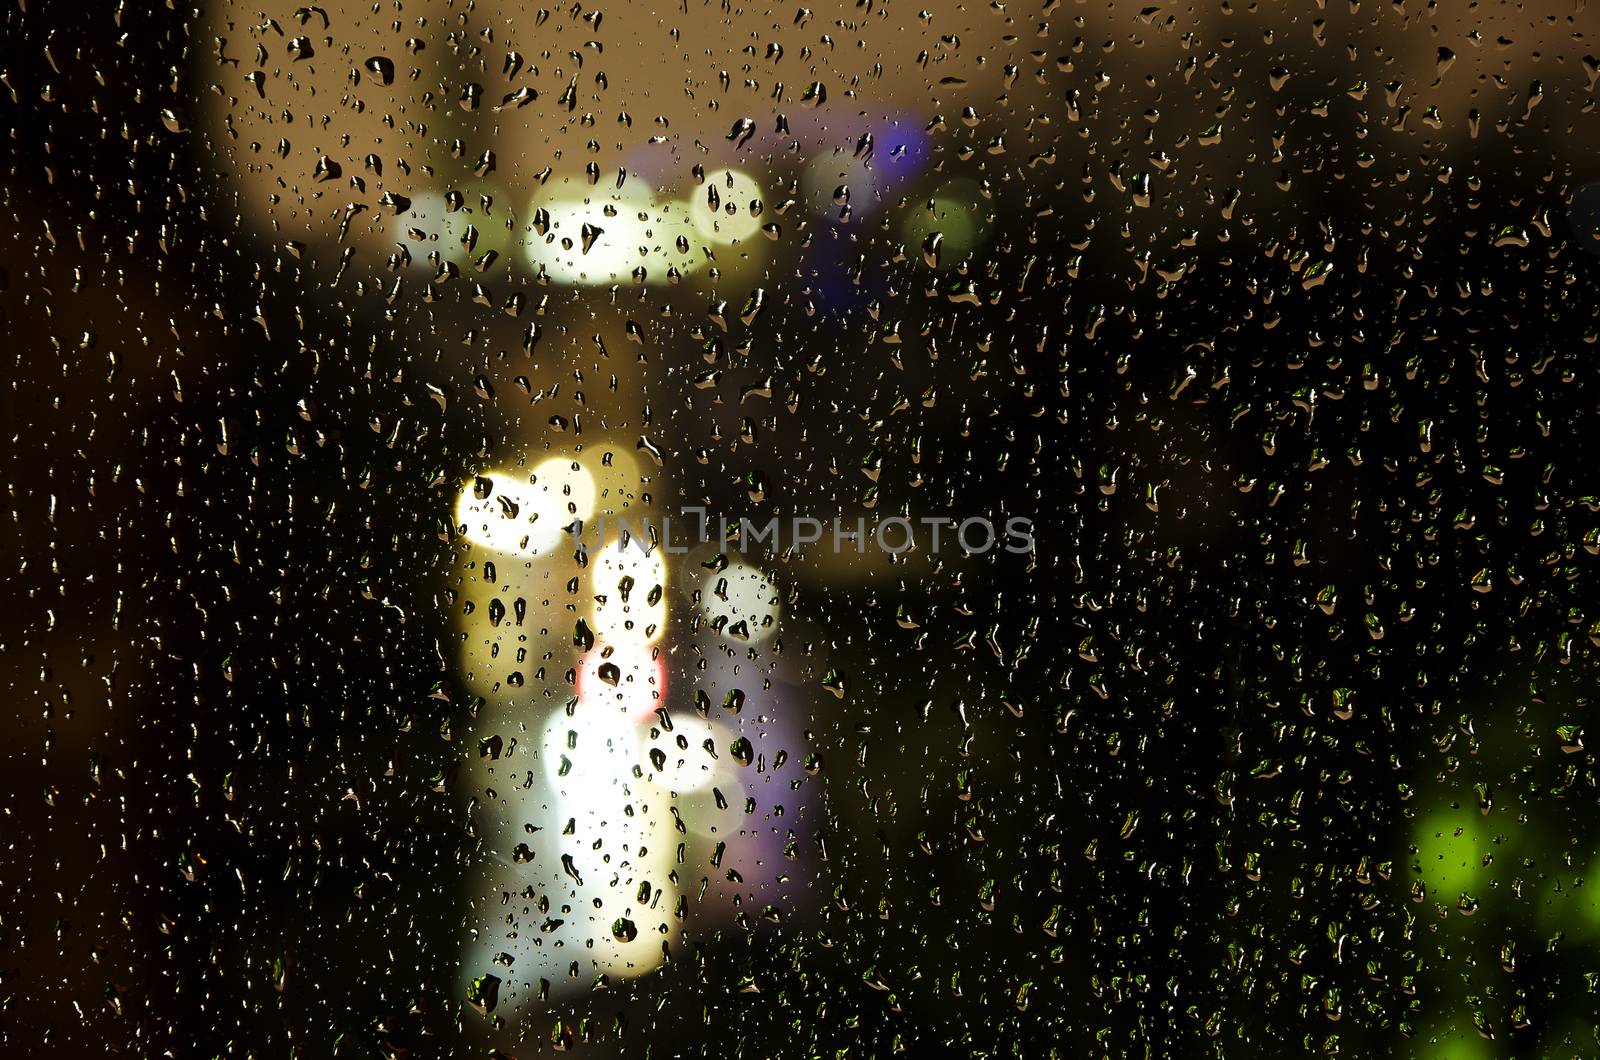 rainy window by Grufnar